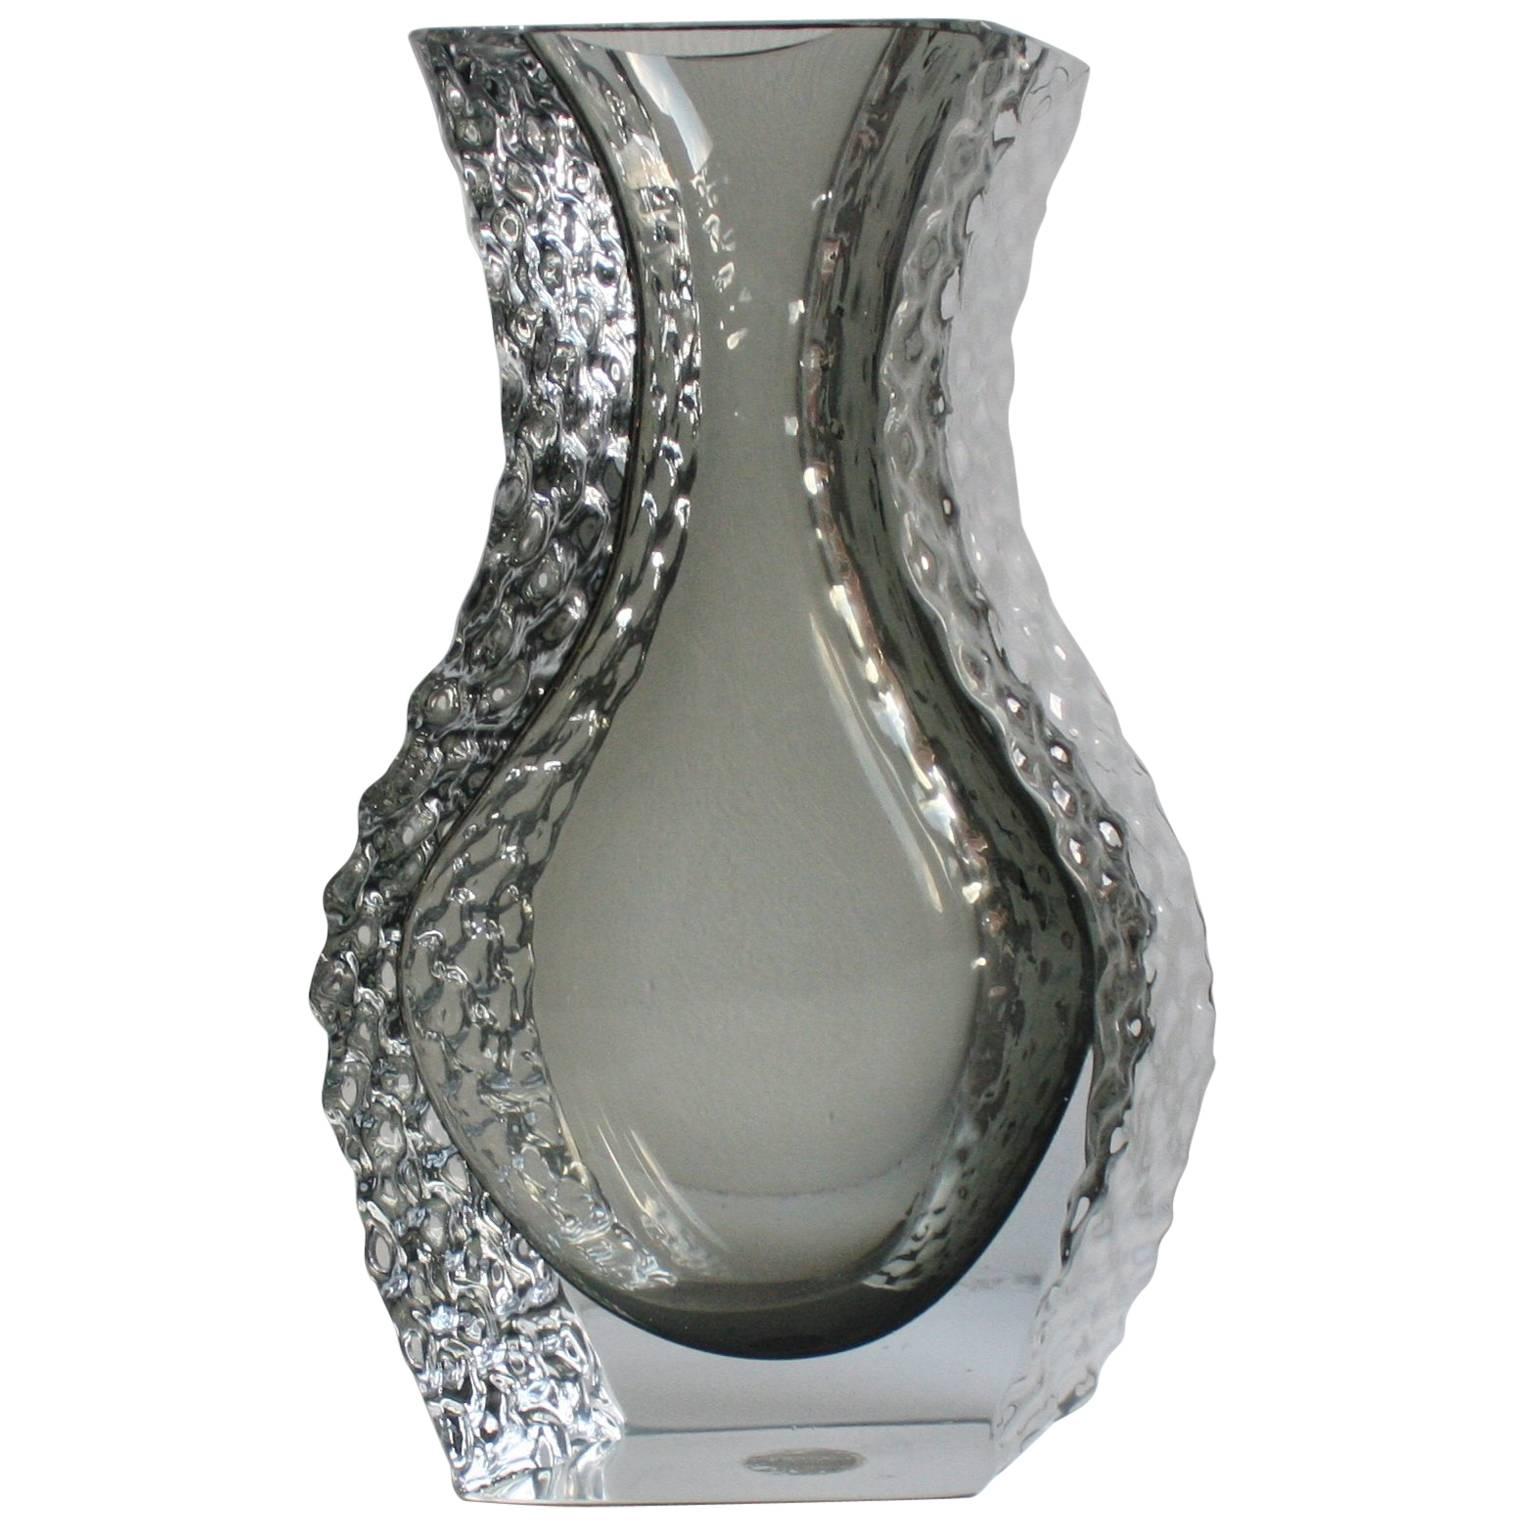 Mandruzzato Murano Art Glass Vase by Cavagnis For Sale